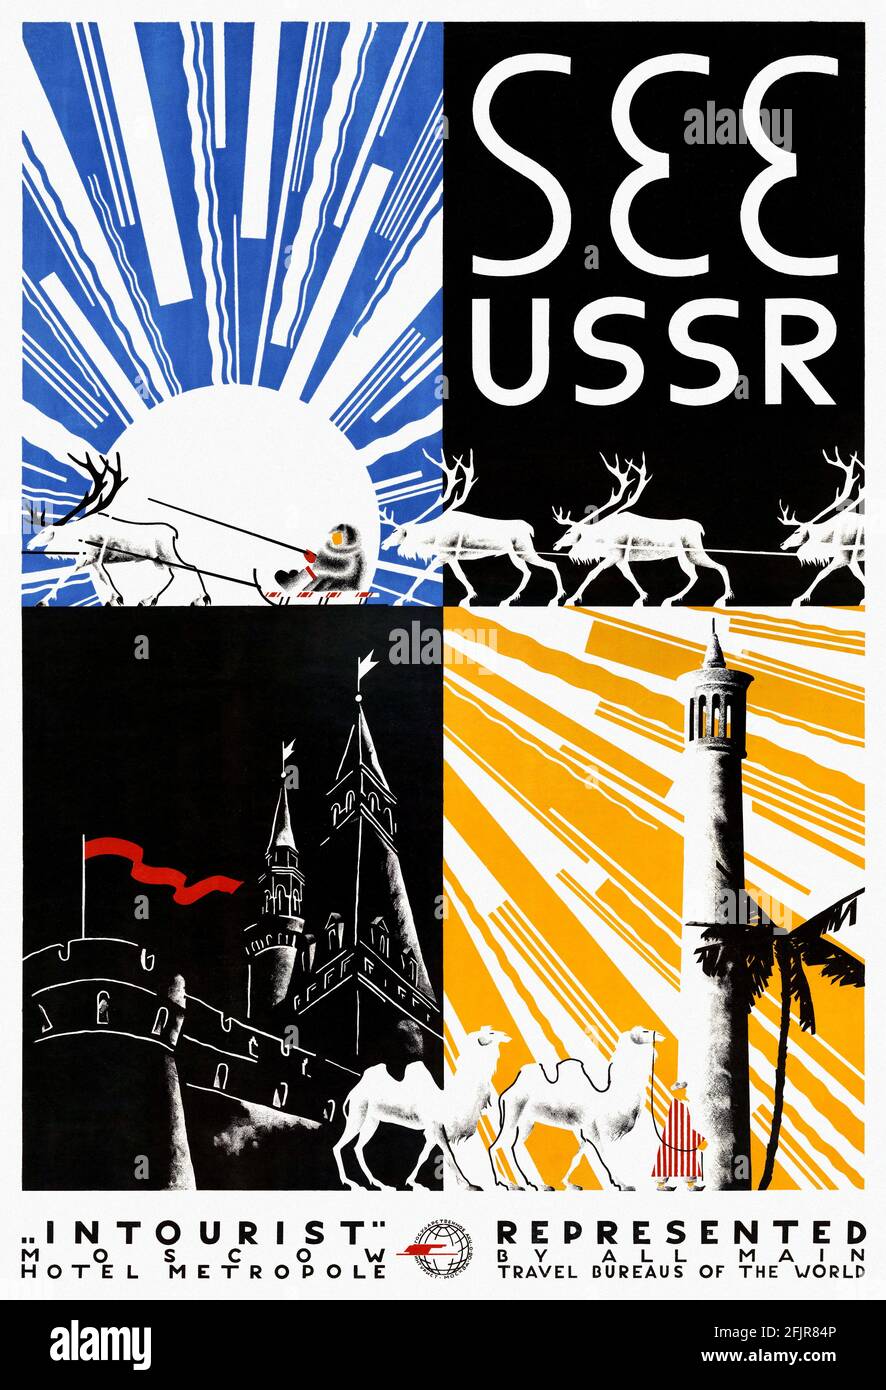 Voir URSS. Artiste inconnu. Affiche ancienne restaurée publiée dans les années 1930 en URSS. Banque D'Images